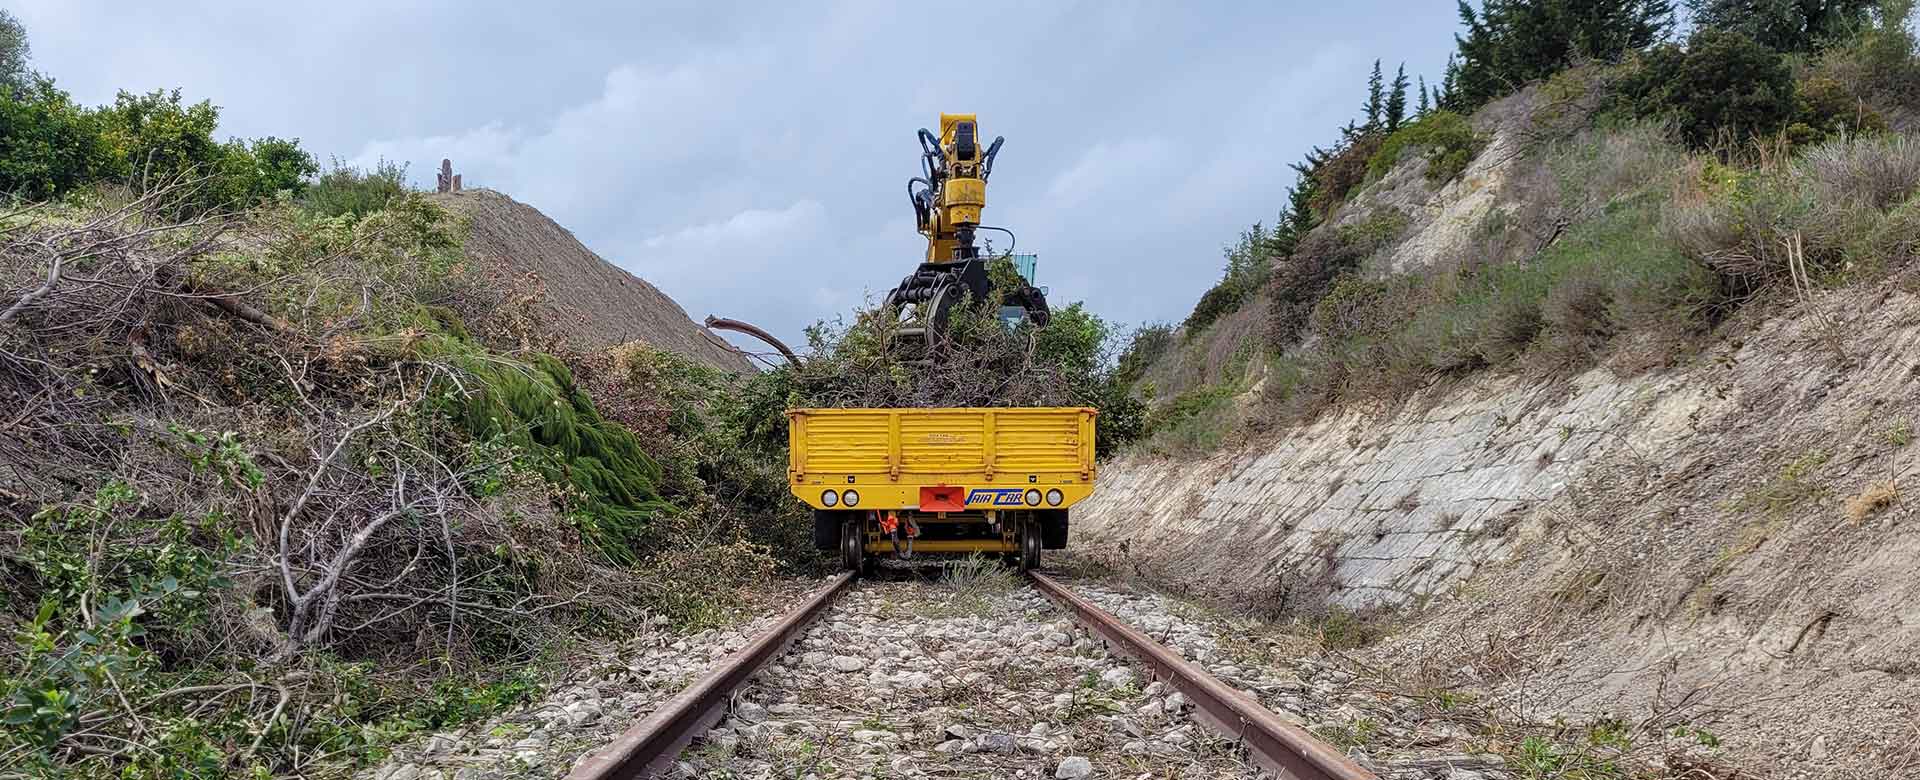 Lavori per il ripristino della linea ferroviaria storica Noto-Pachino in Sicilia